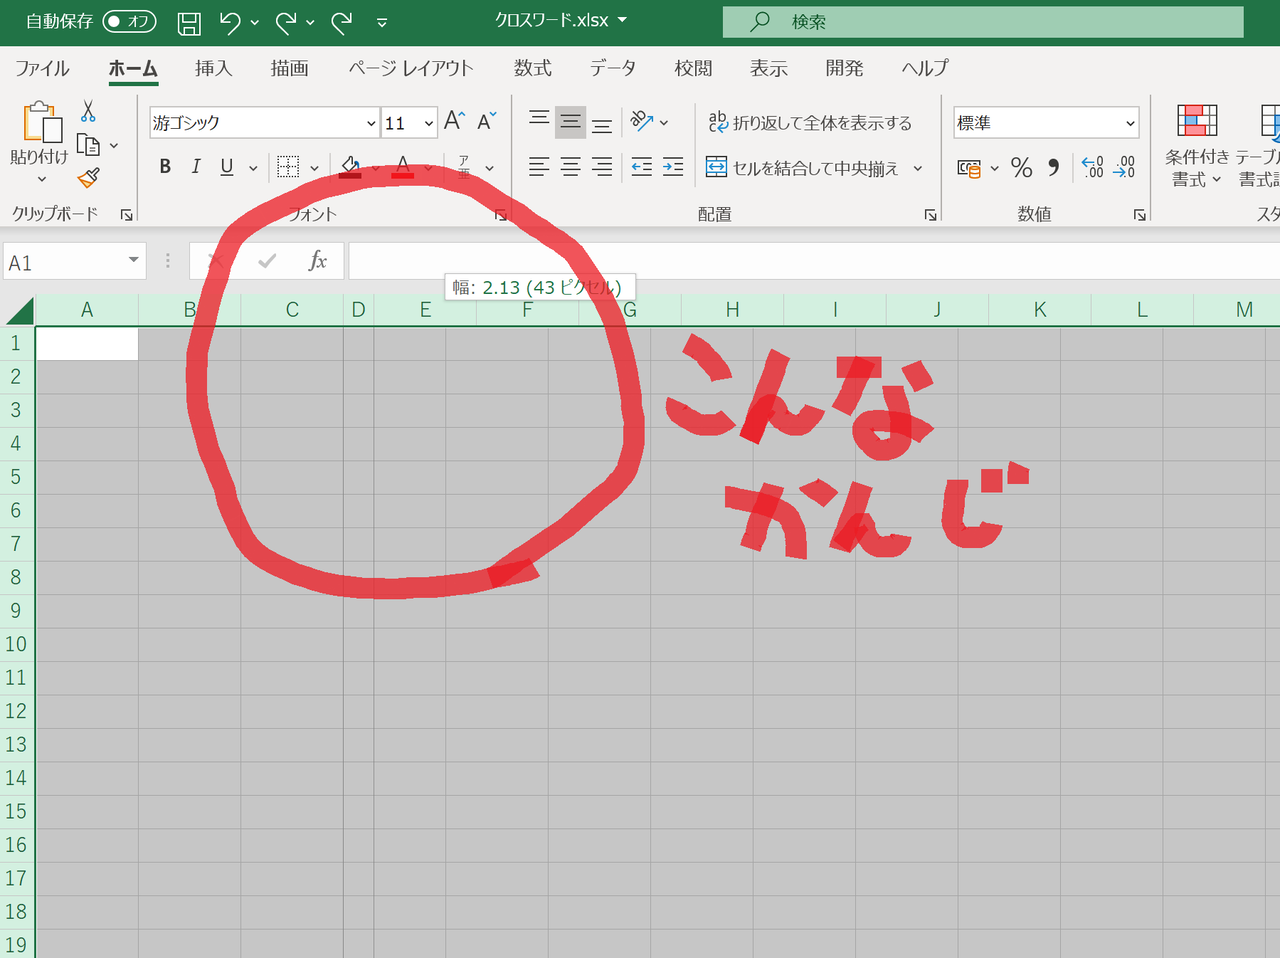 Excel エクセル クロスワードパズル作ってみた 初心者 プログラミング知らんけどゲーム作り隊